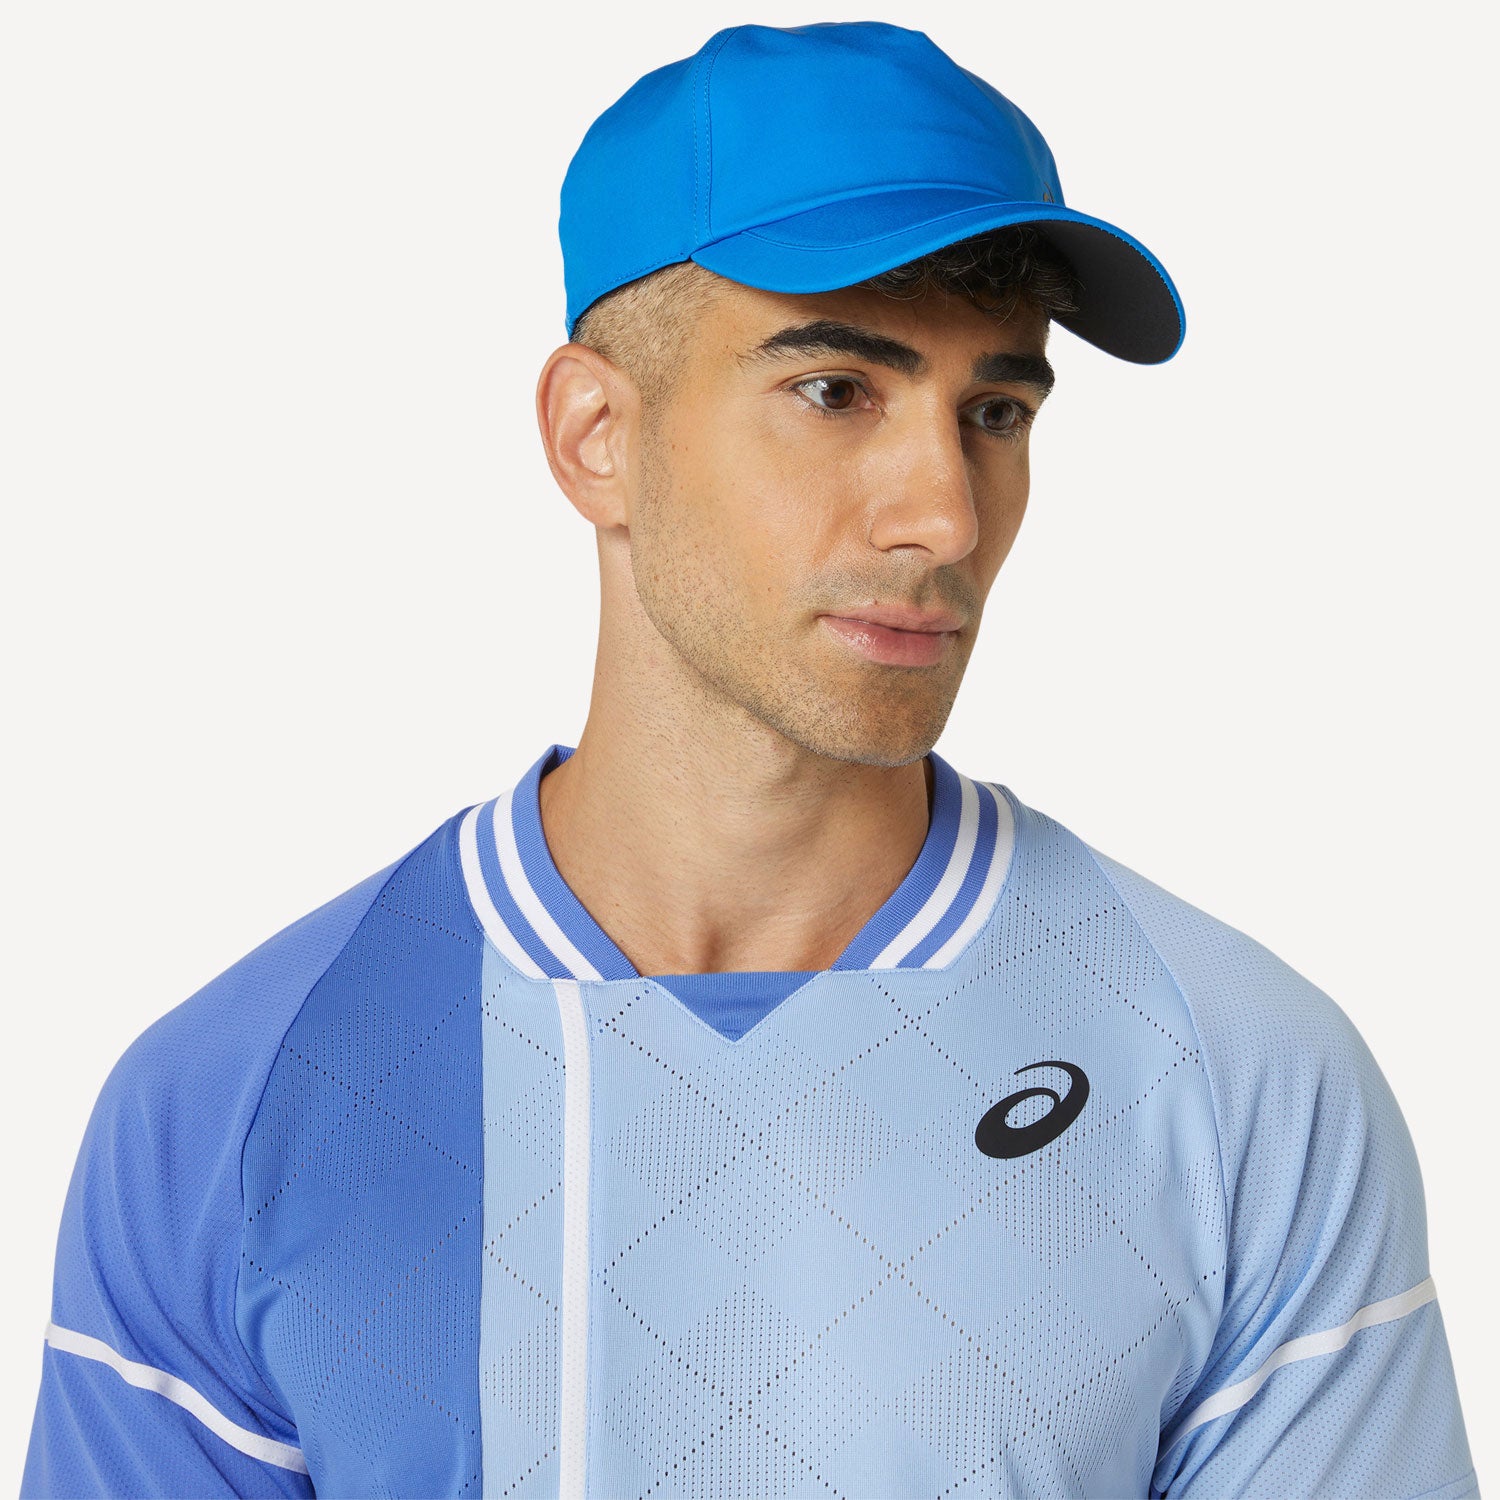 ASICS Match Men's Tennis Shirt - Blue (4)